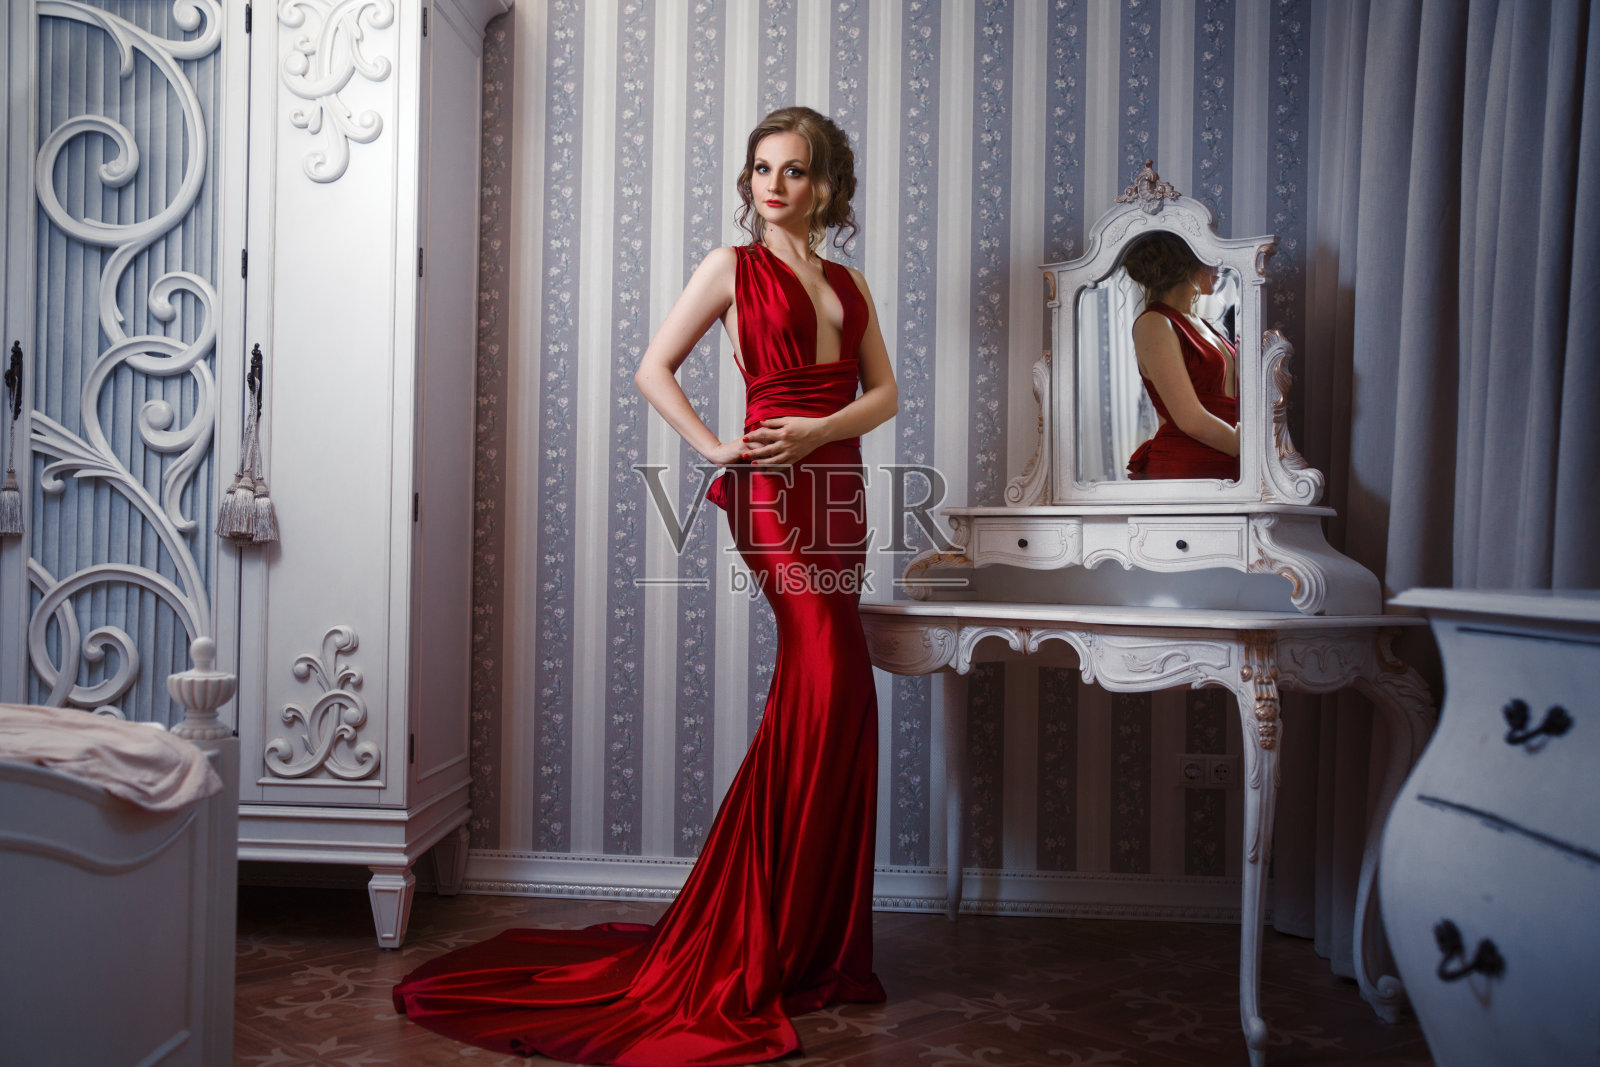 一个优雅苗条的女人穿着一件红色的连衣裙，内饰别致。照片摄影图片